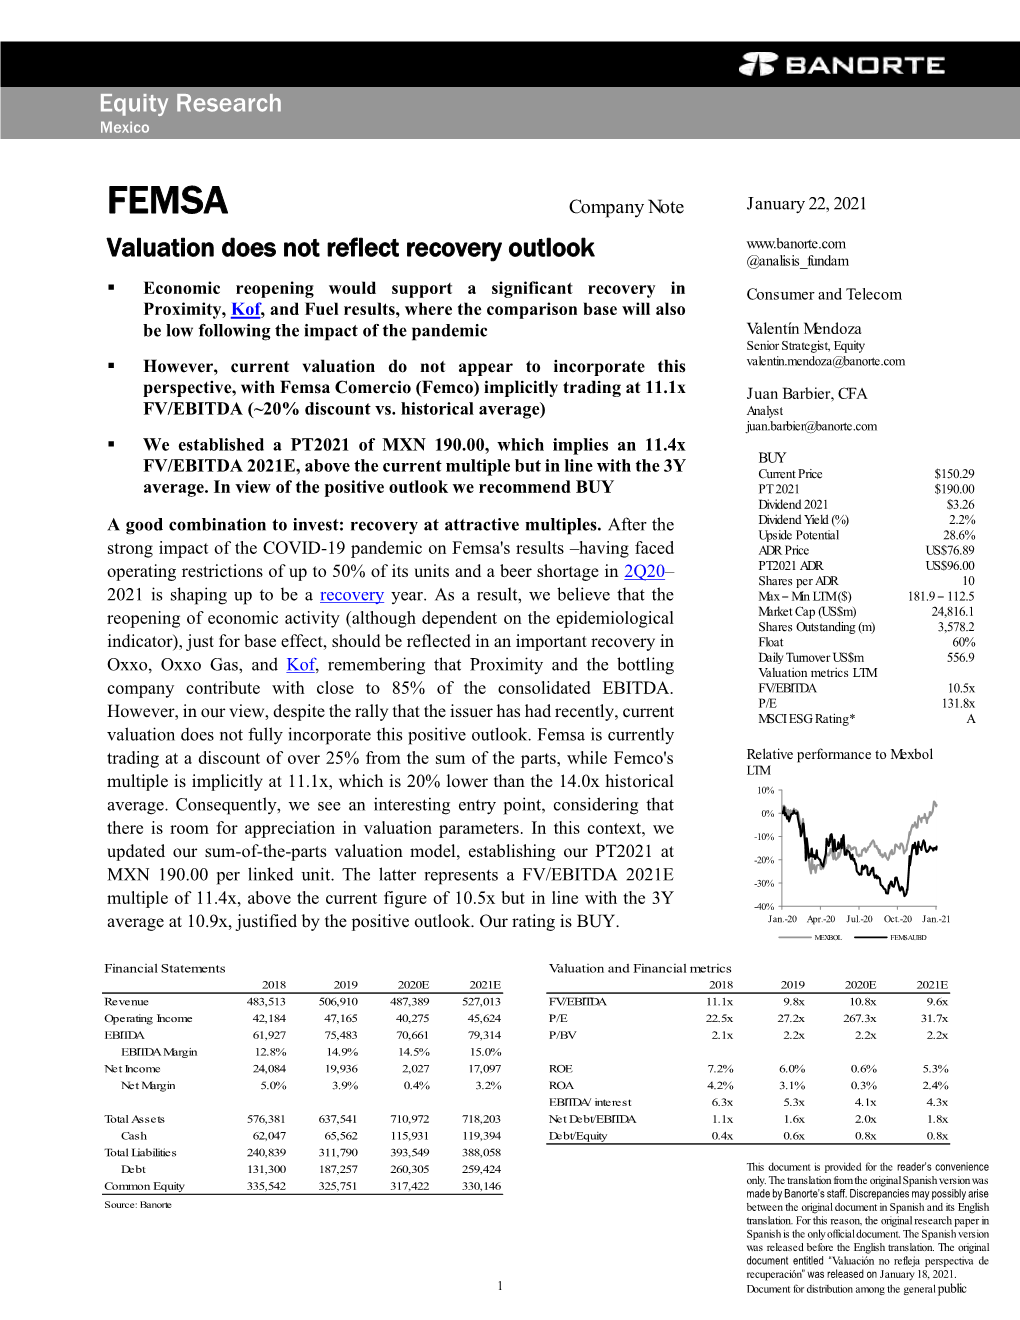 FEMSA Company Note January 22, 2021